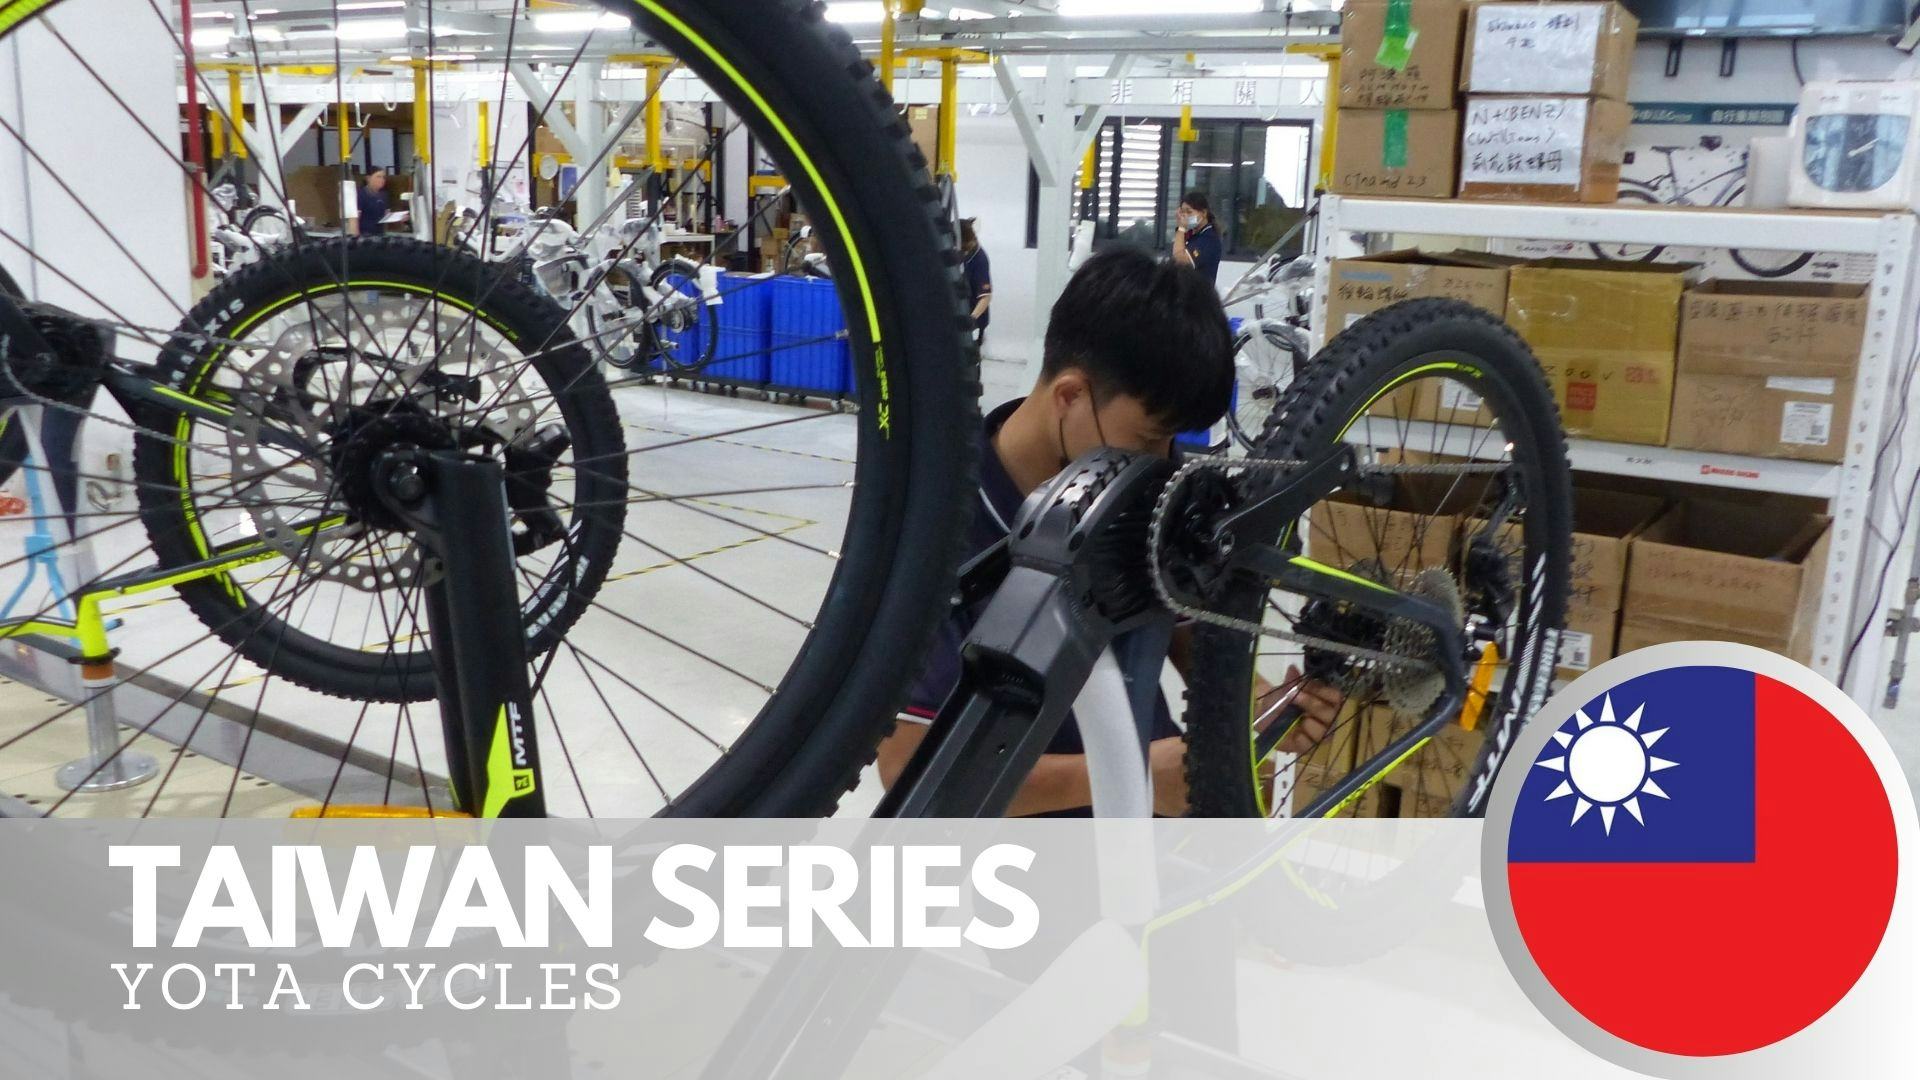 Yota Cycles produces 250 e-bikes per day. – Photos Bike Europe